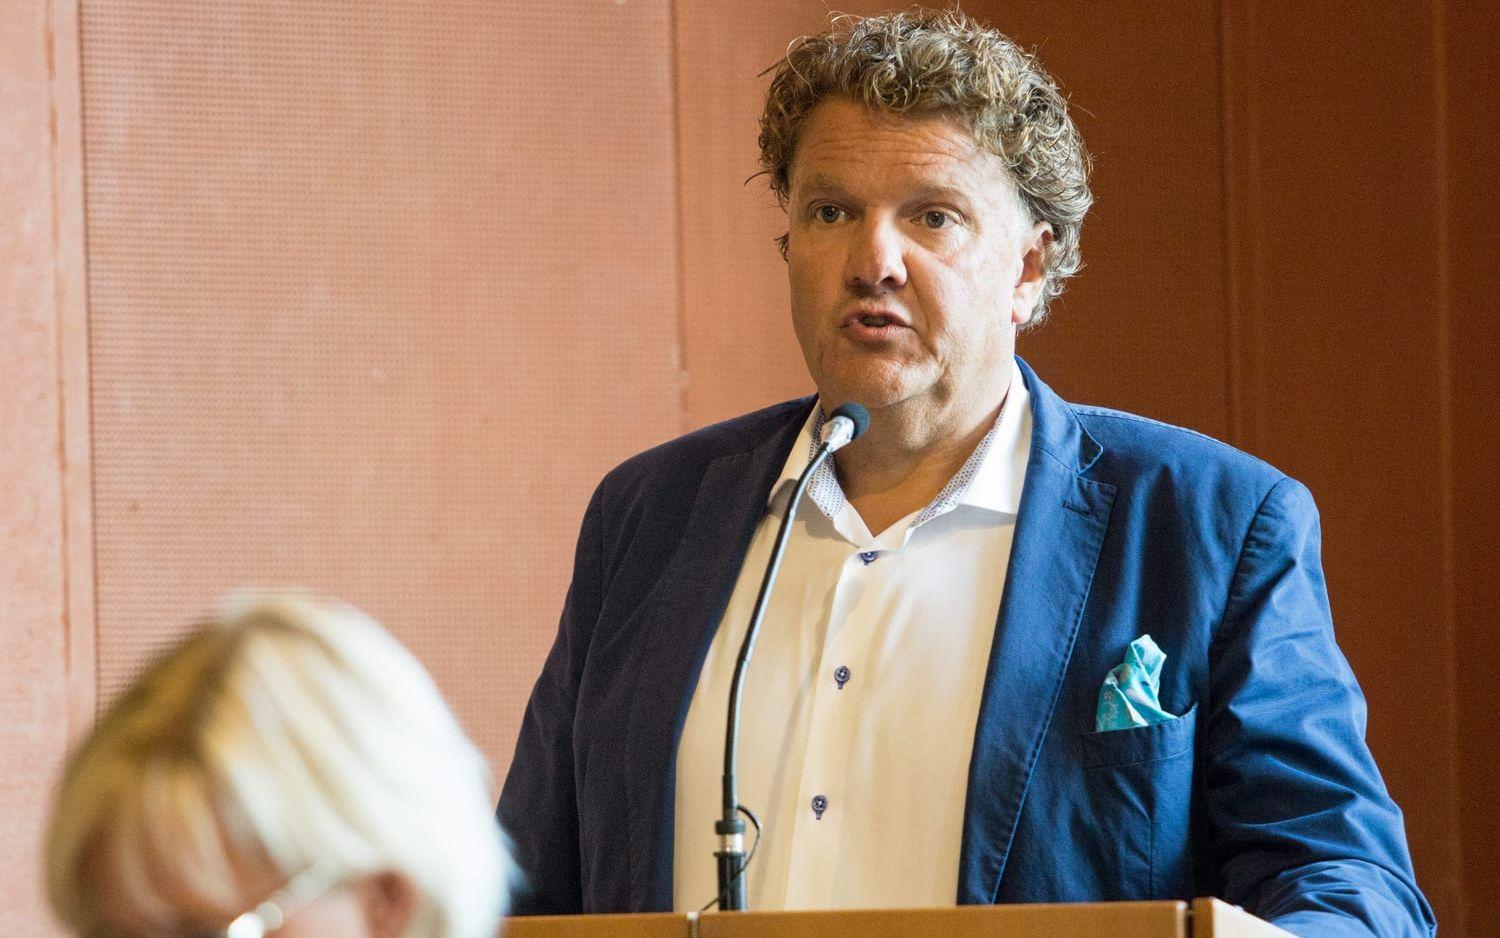 "Illojal" 1. Socialnämndens ordförande Mikael Kahlin (M) har inte sina partikamraters förtroende. Bild: Jonatan Gernes